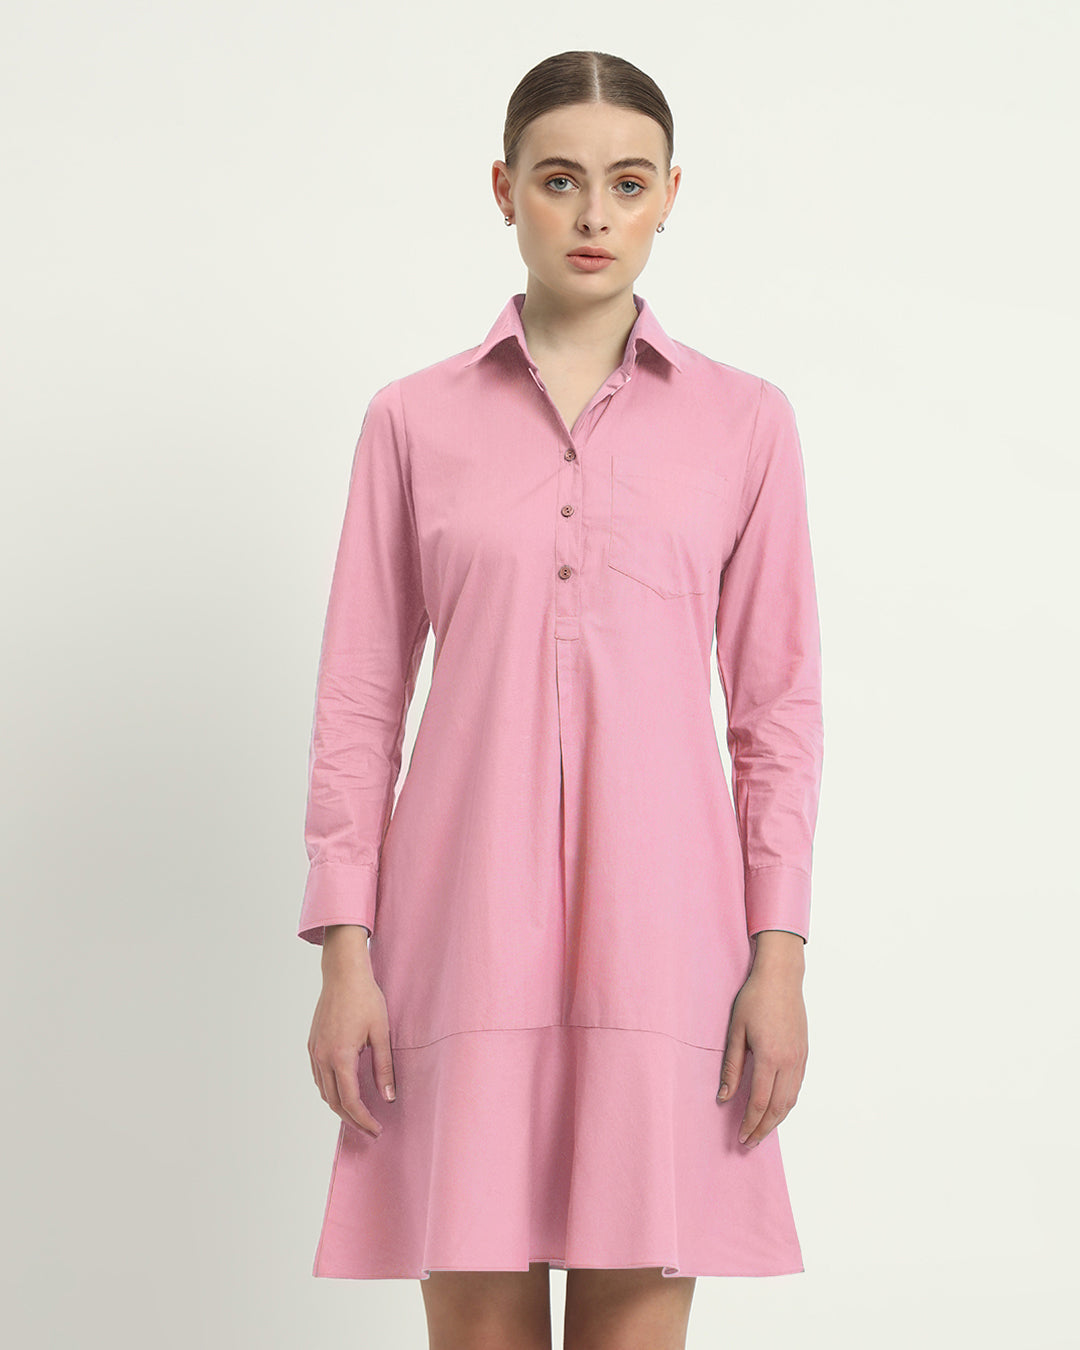 The Lyon Fondant Pink Cotton Dress